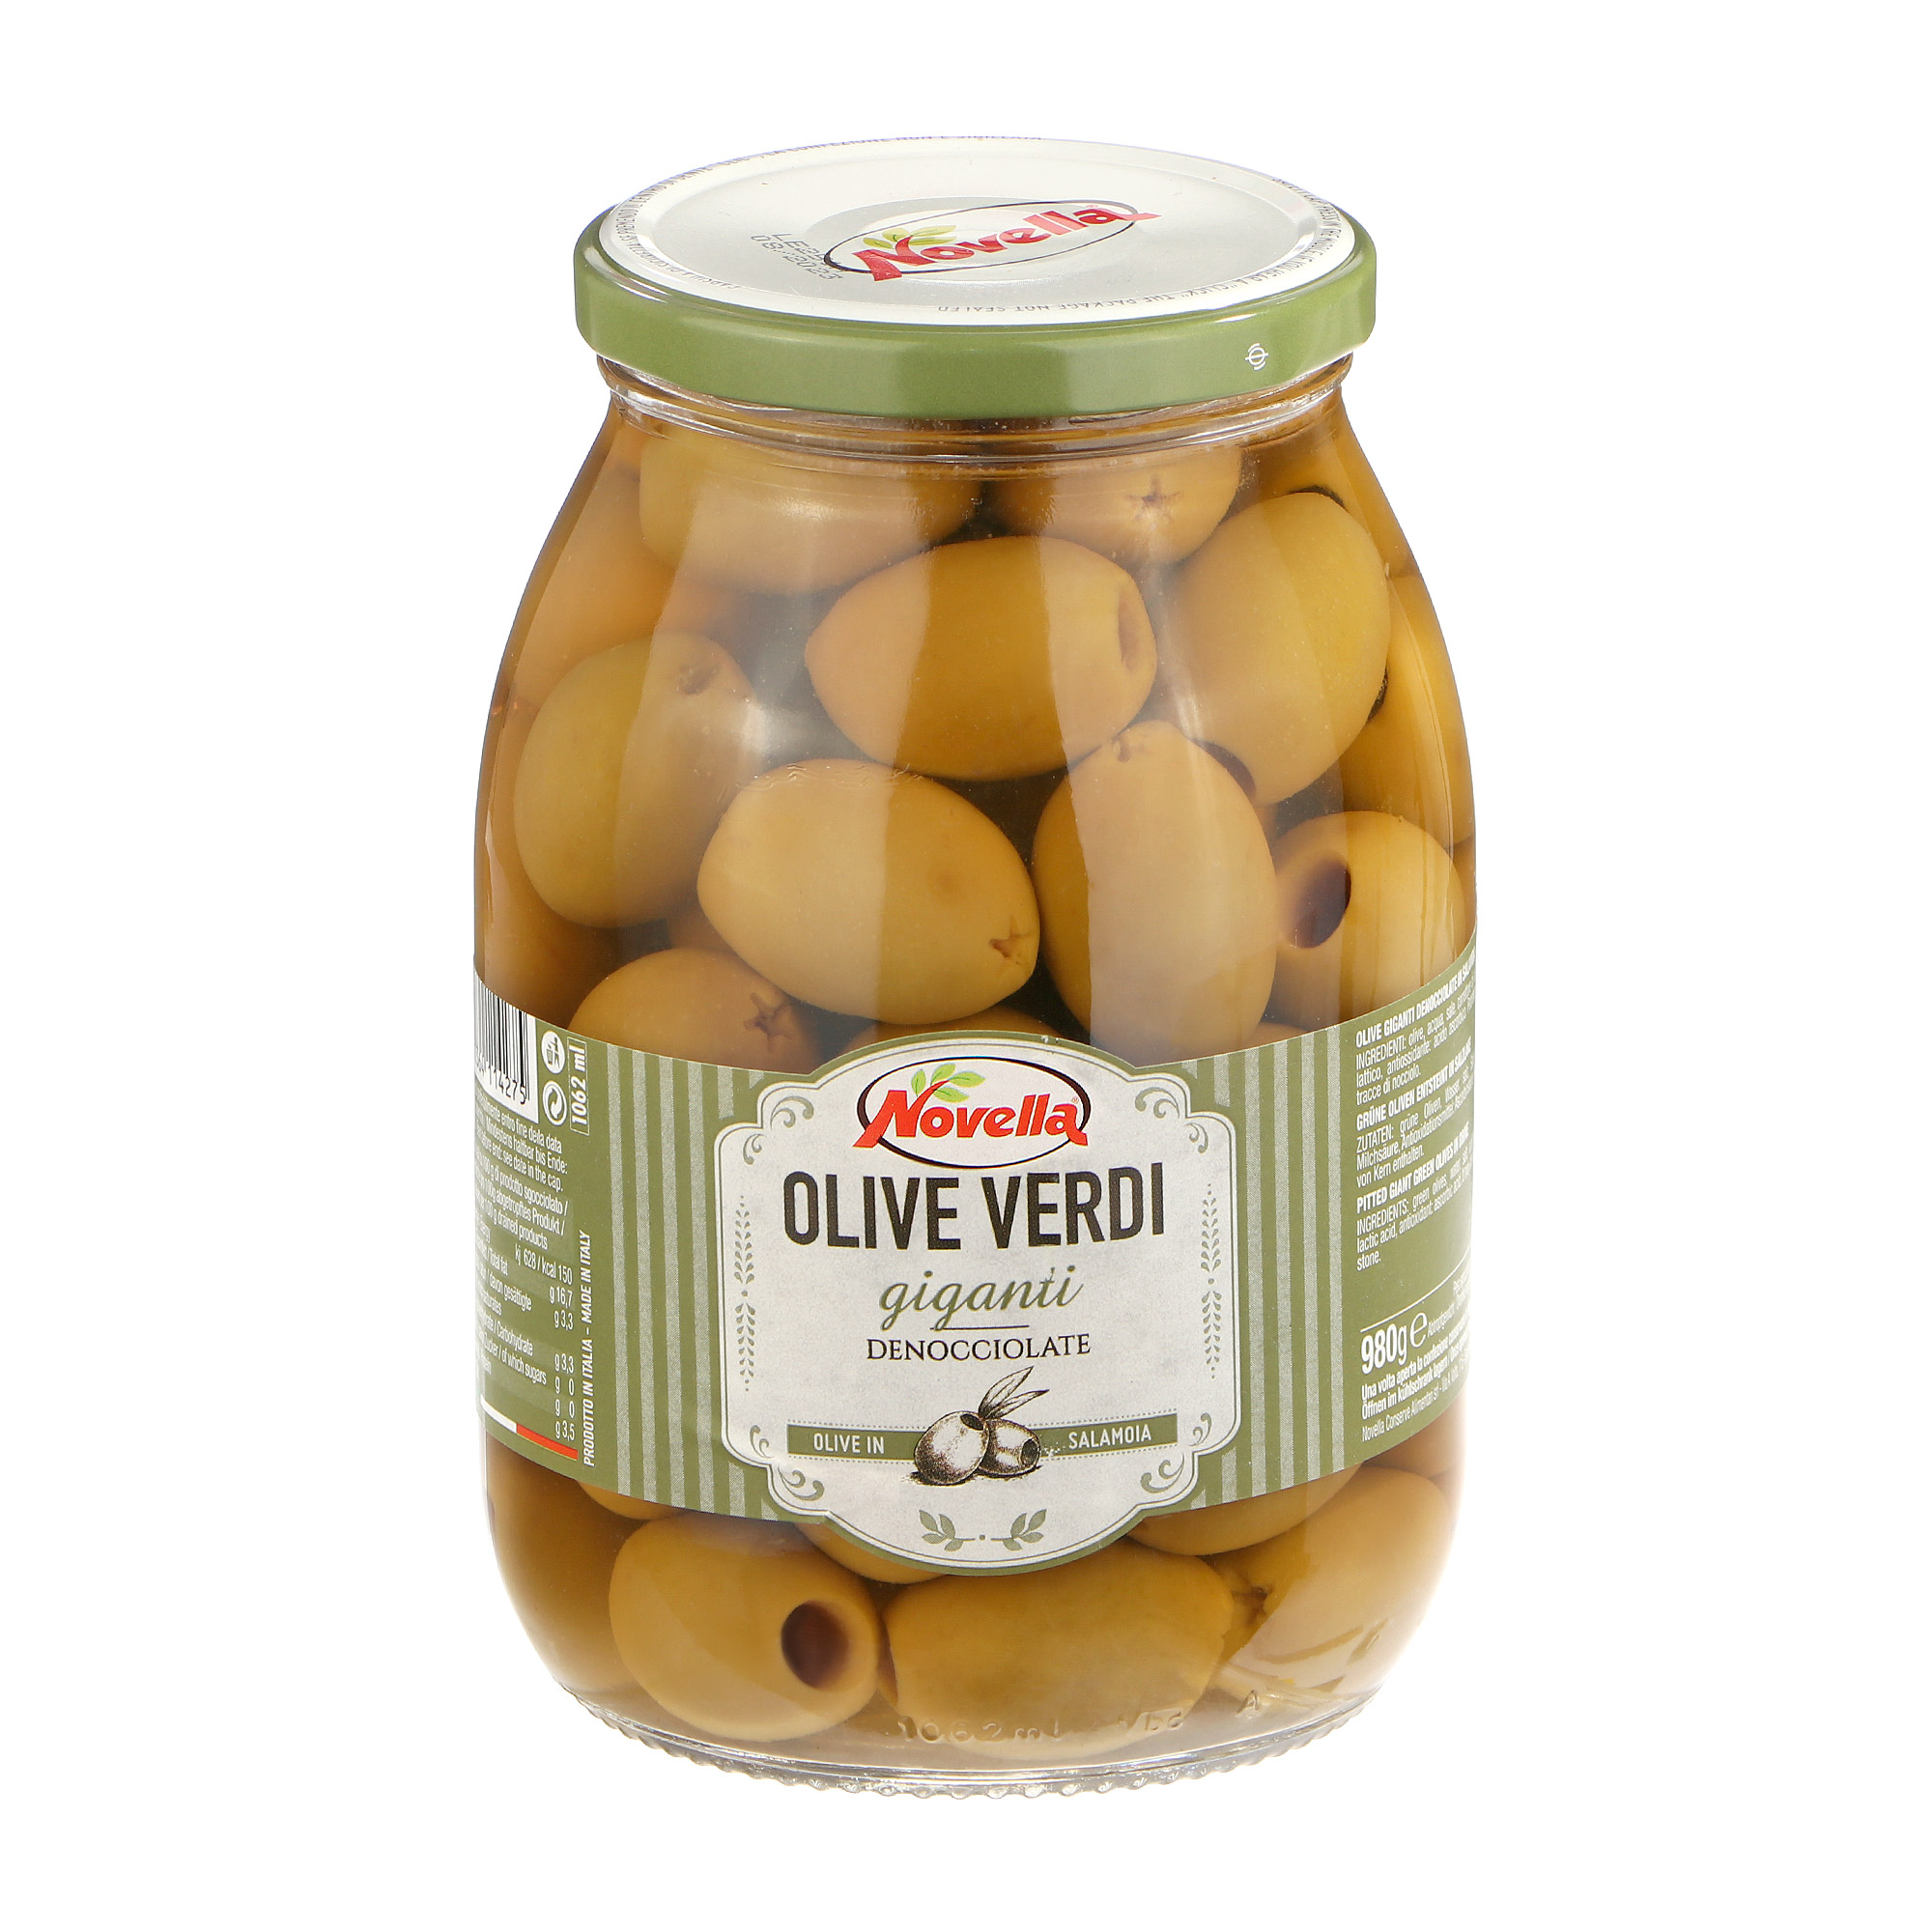 Оливки Novella Olive Verdi giganti без косточек, 980 г